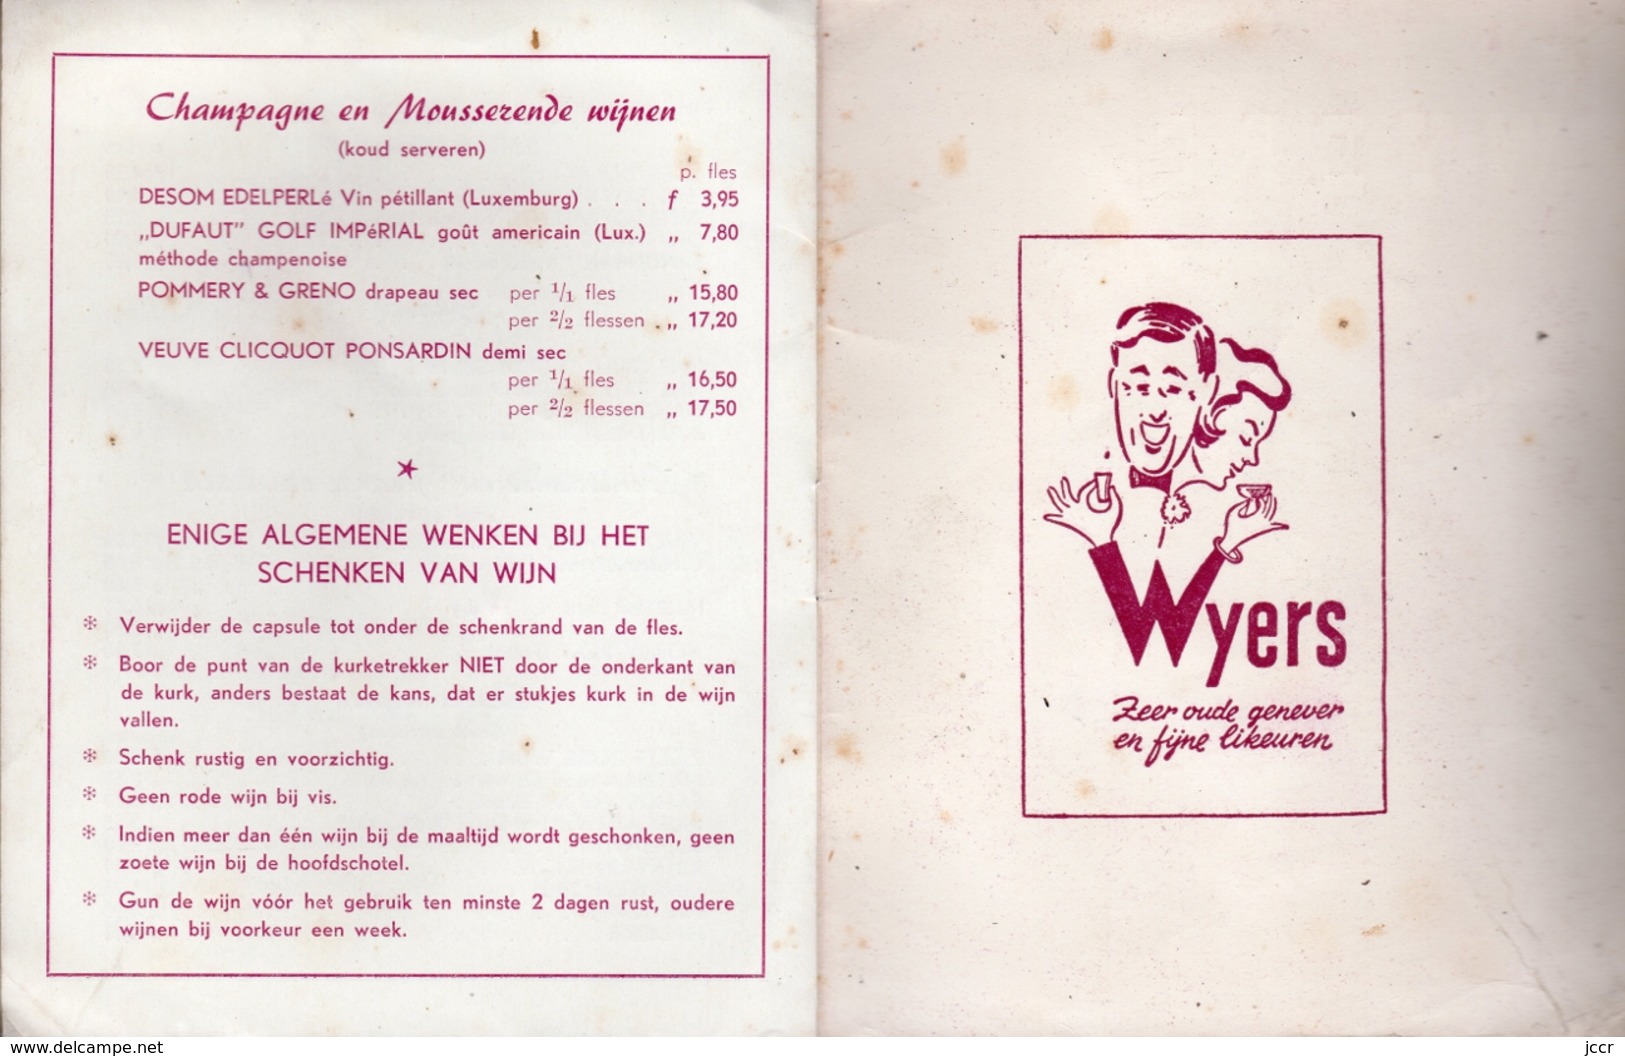 Slijterij H. C. Wyers & Co. Vriesestraat 32 - Dordrecht (Pays-Bas) - Prijscourant vor particulieren - December 1955